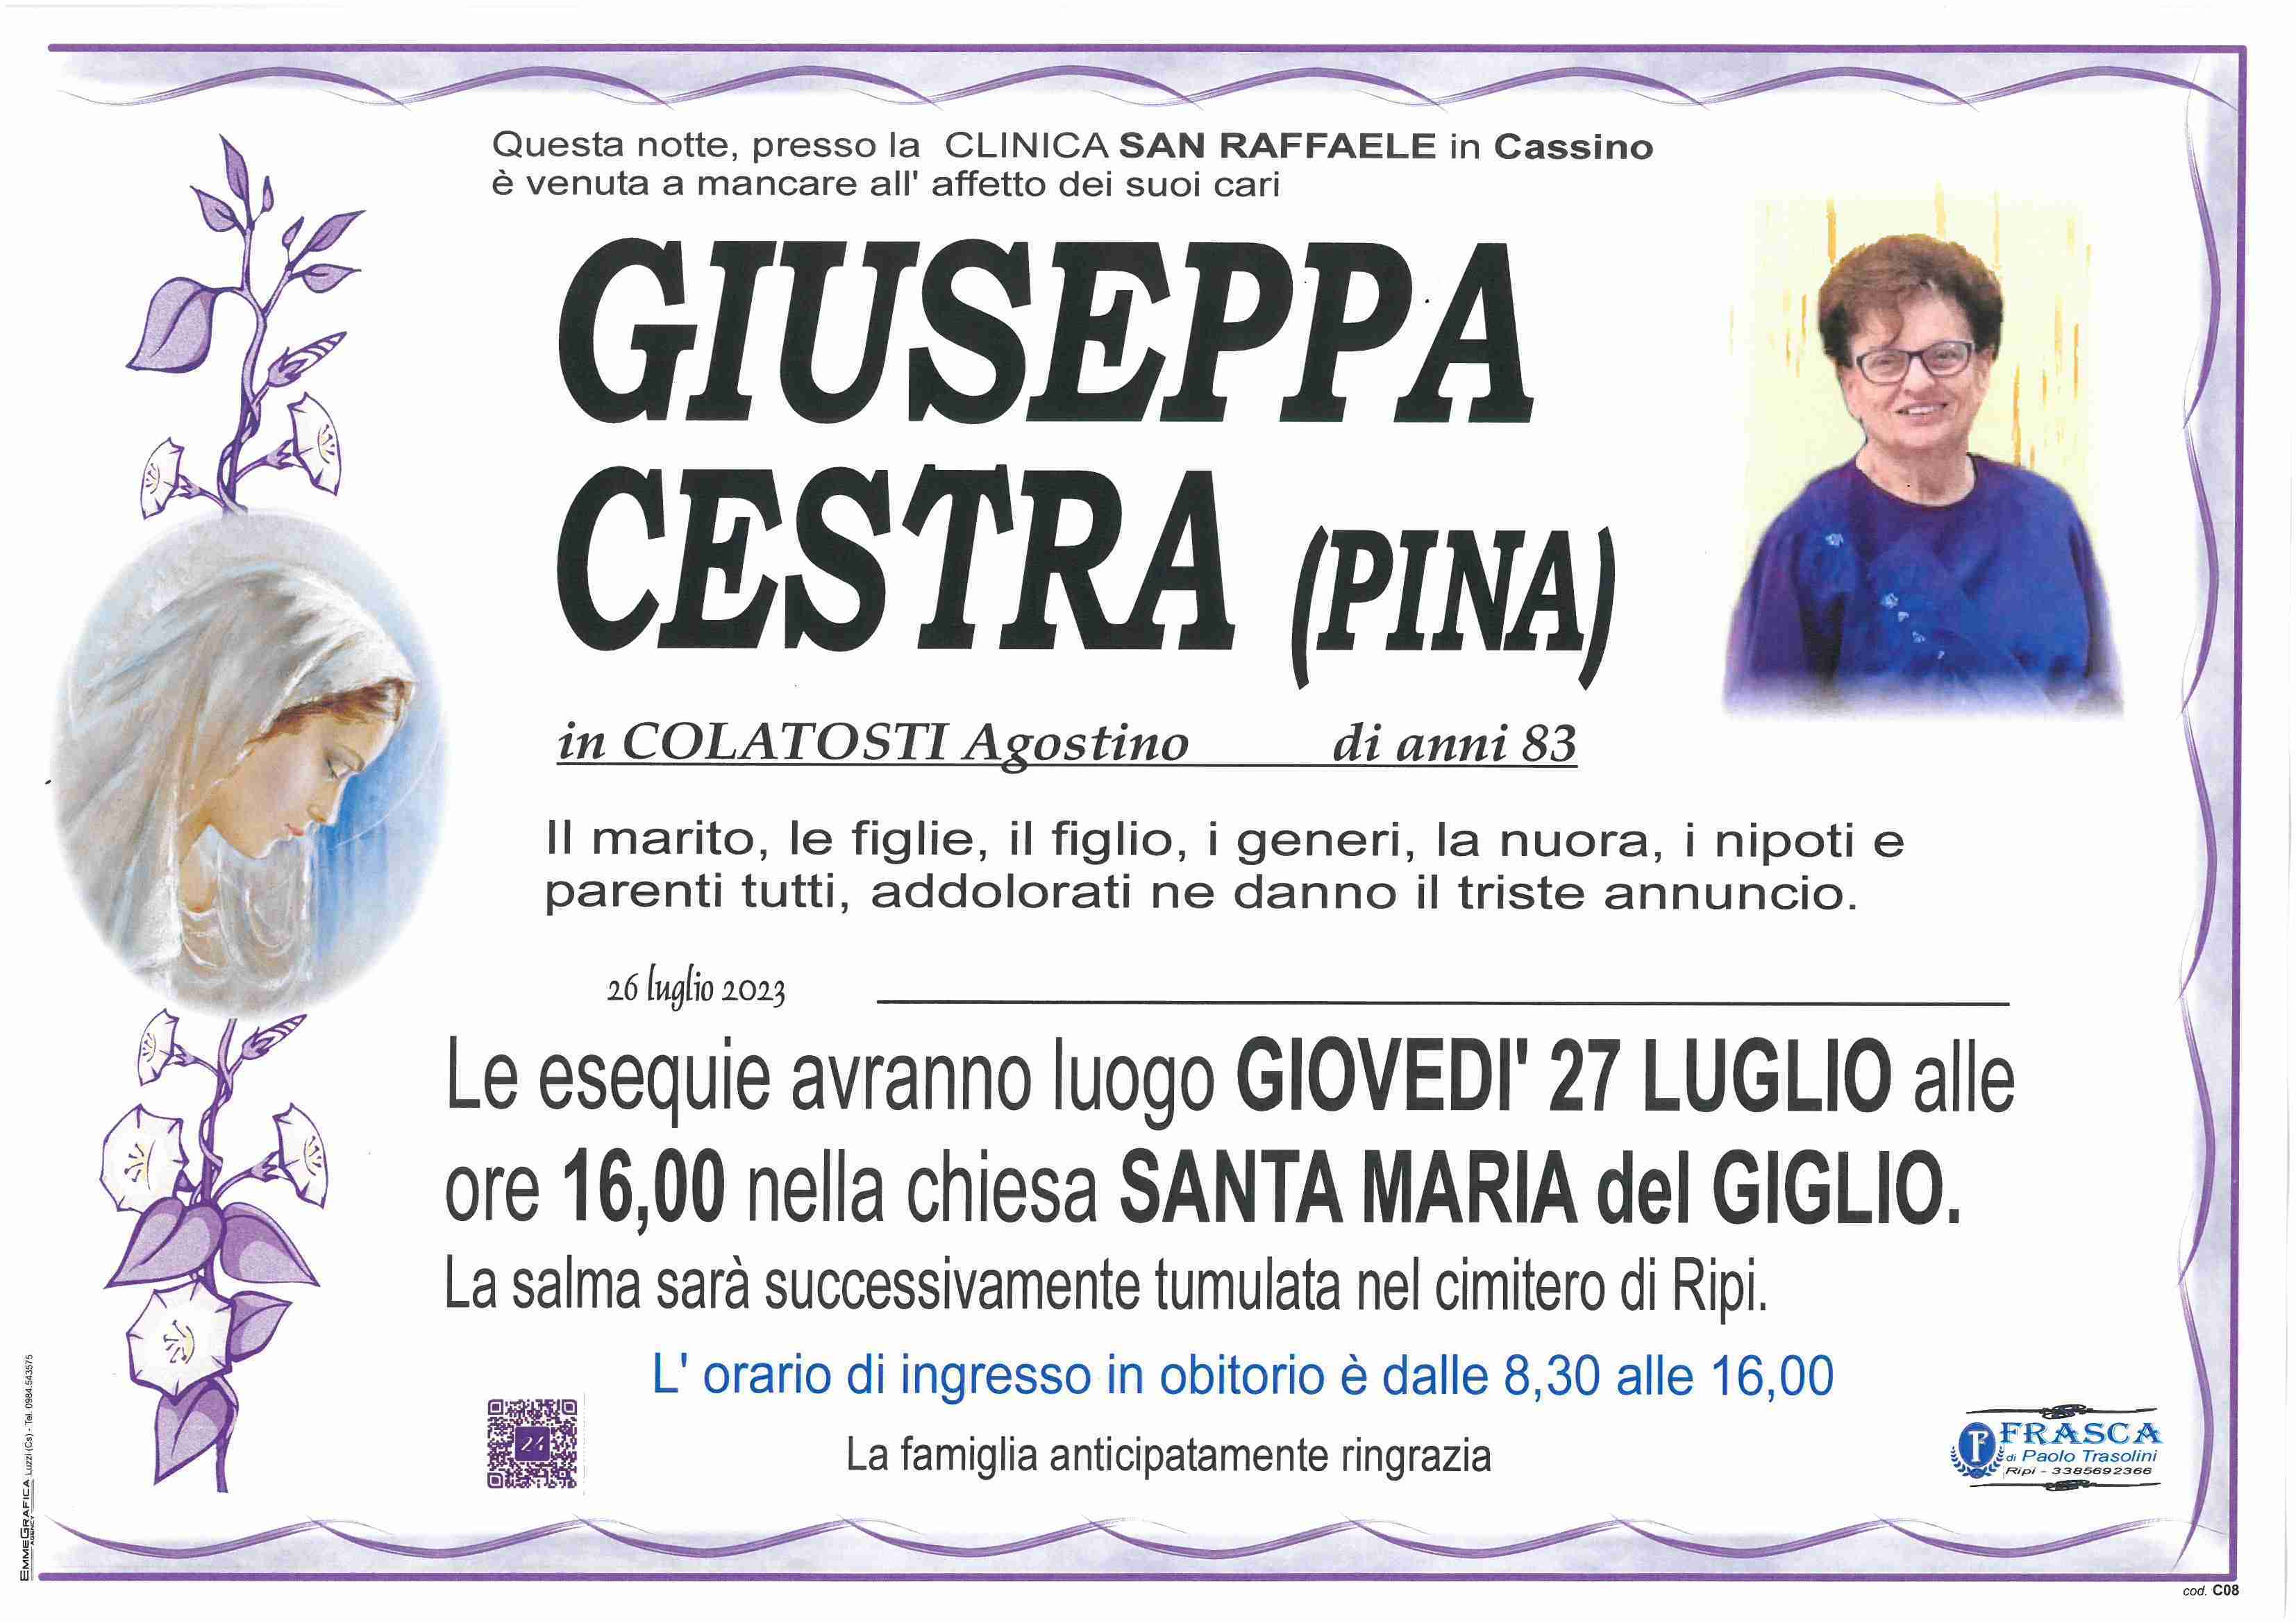 Giuseppa Cestra